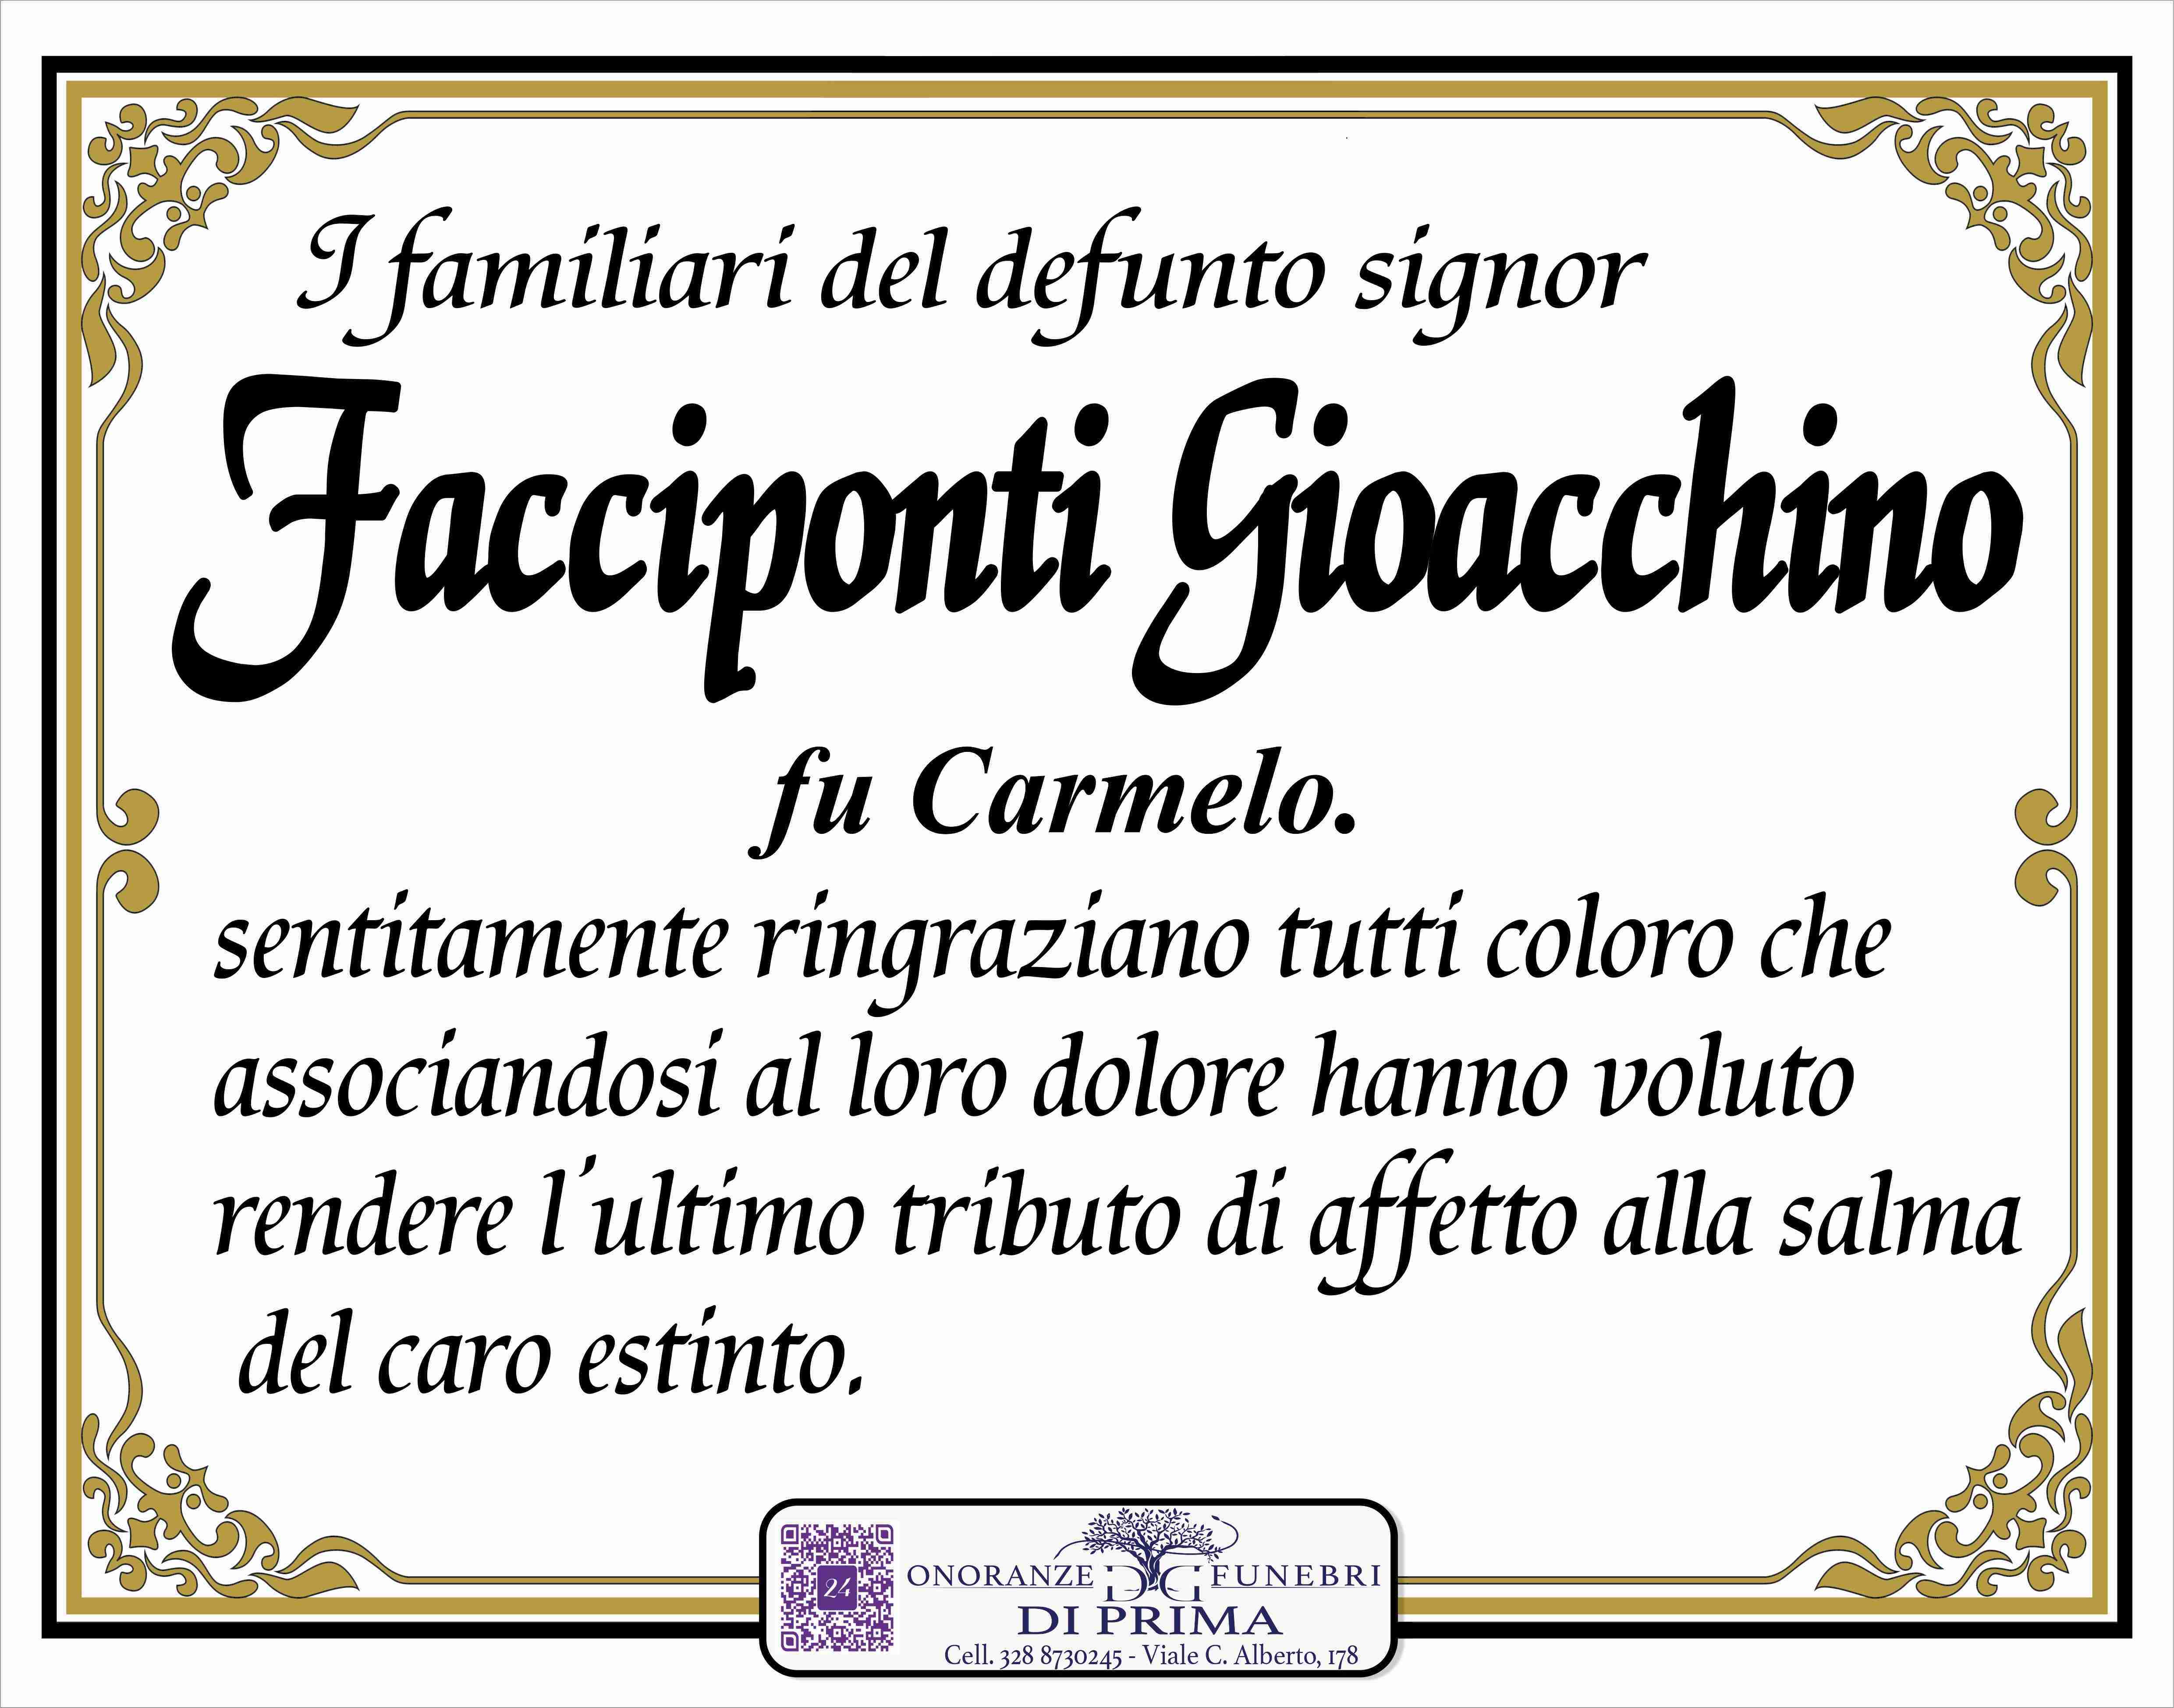 Gioacchino Facciponti